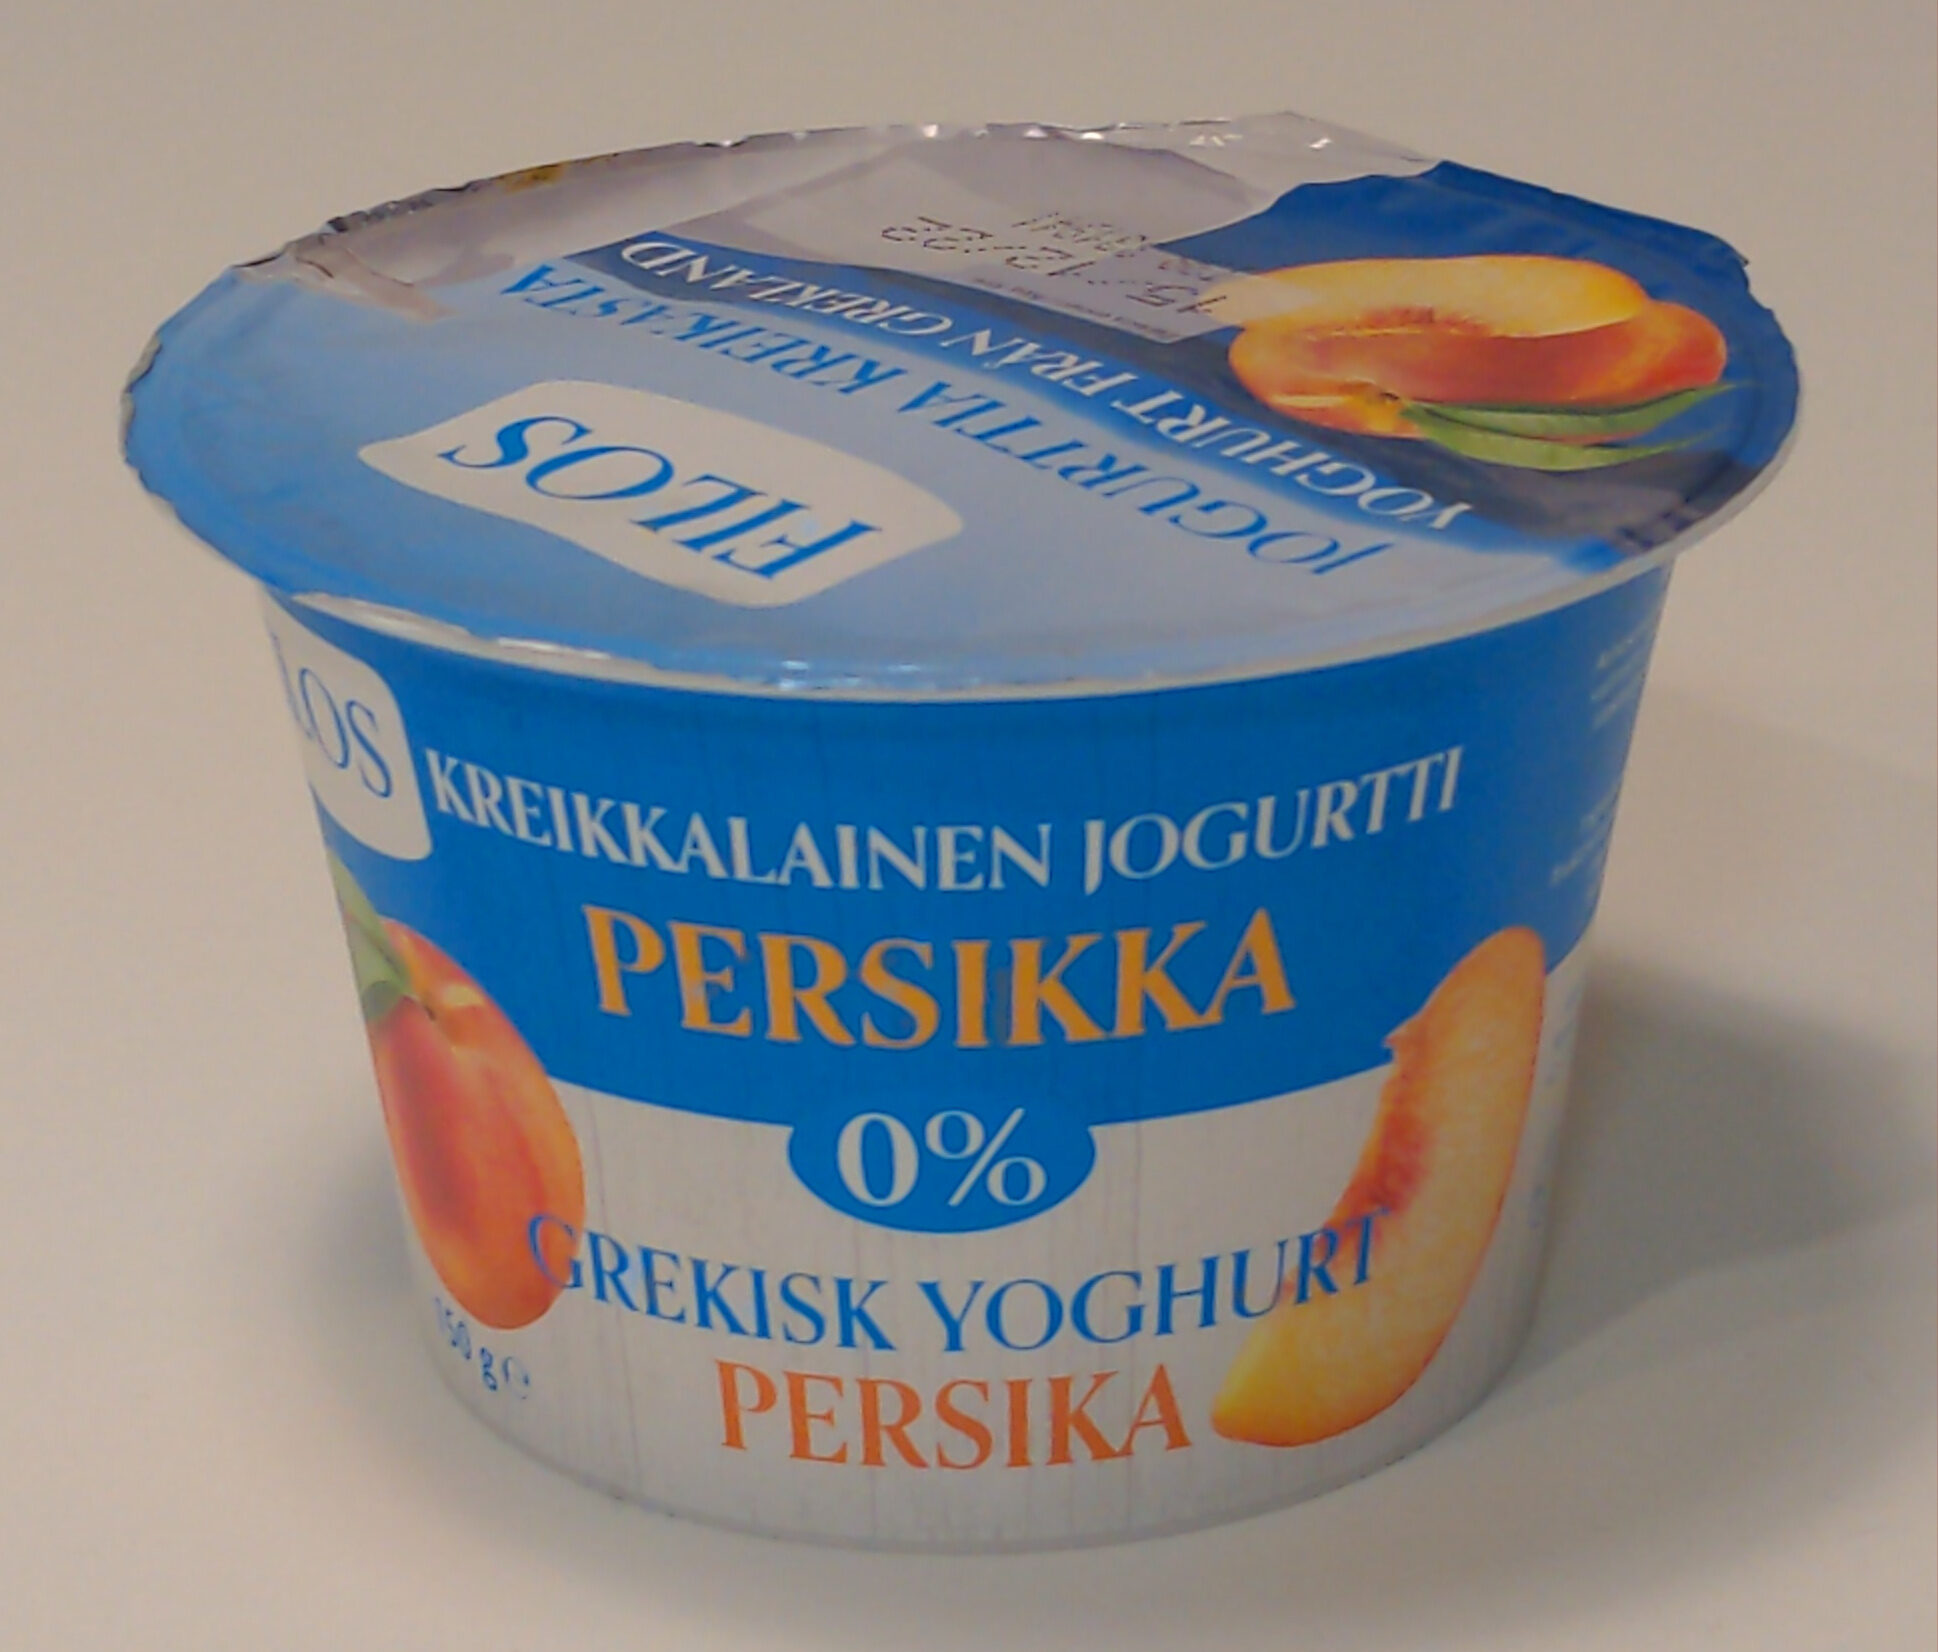 Kreikkalainen jogurtti persikka 0% - Tuote